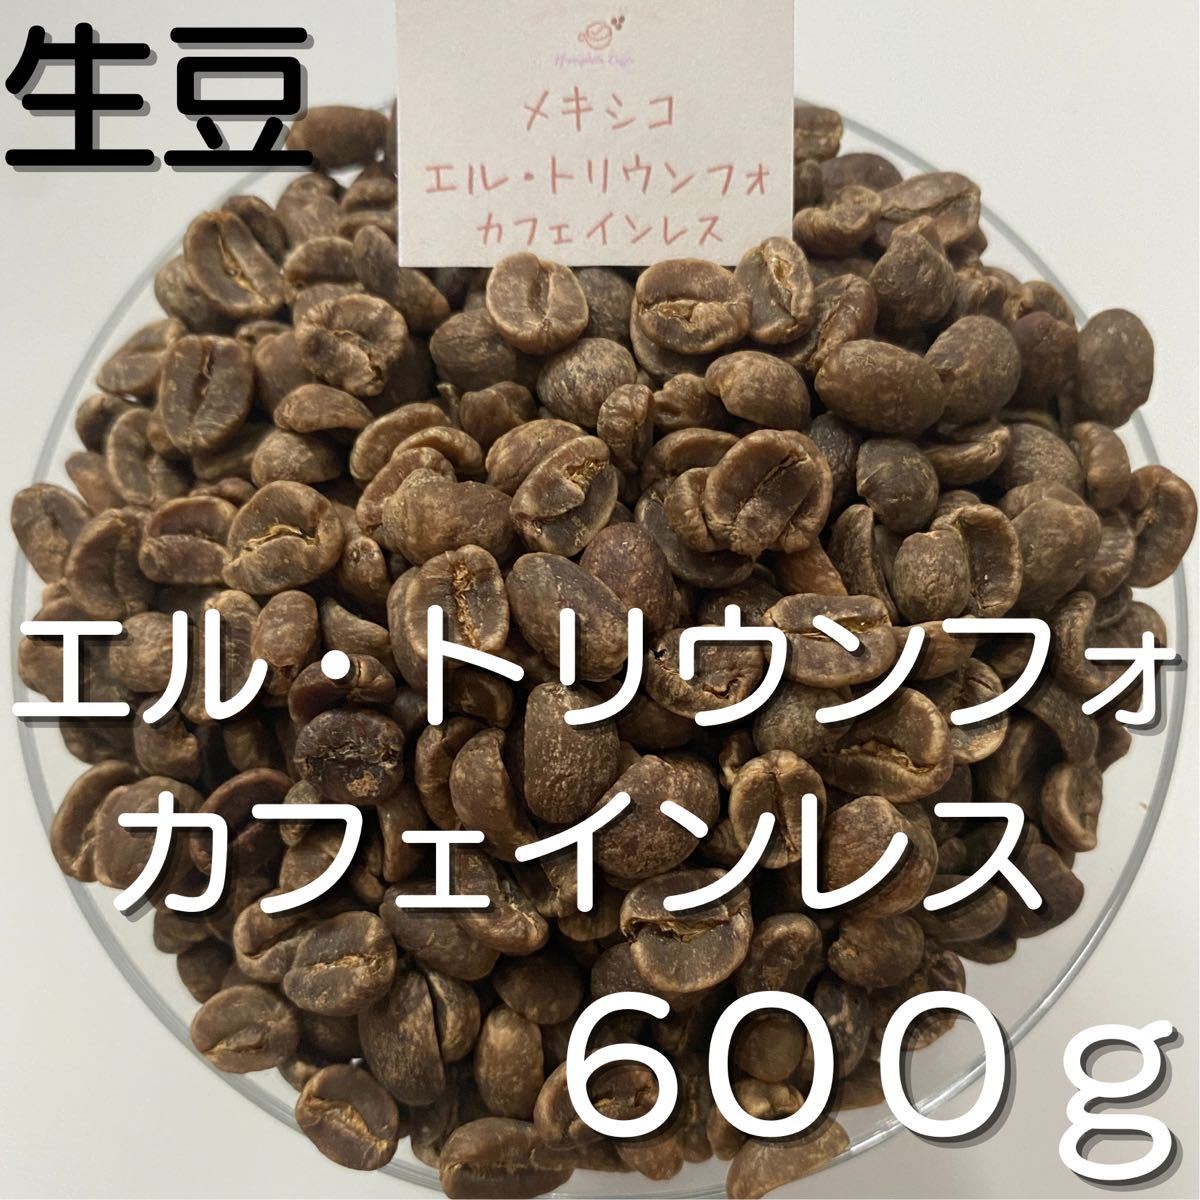 【コーヒー生豆】エル・トリウンフォ カフェインレス 600g